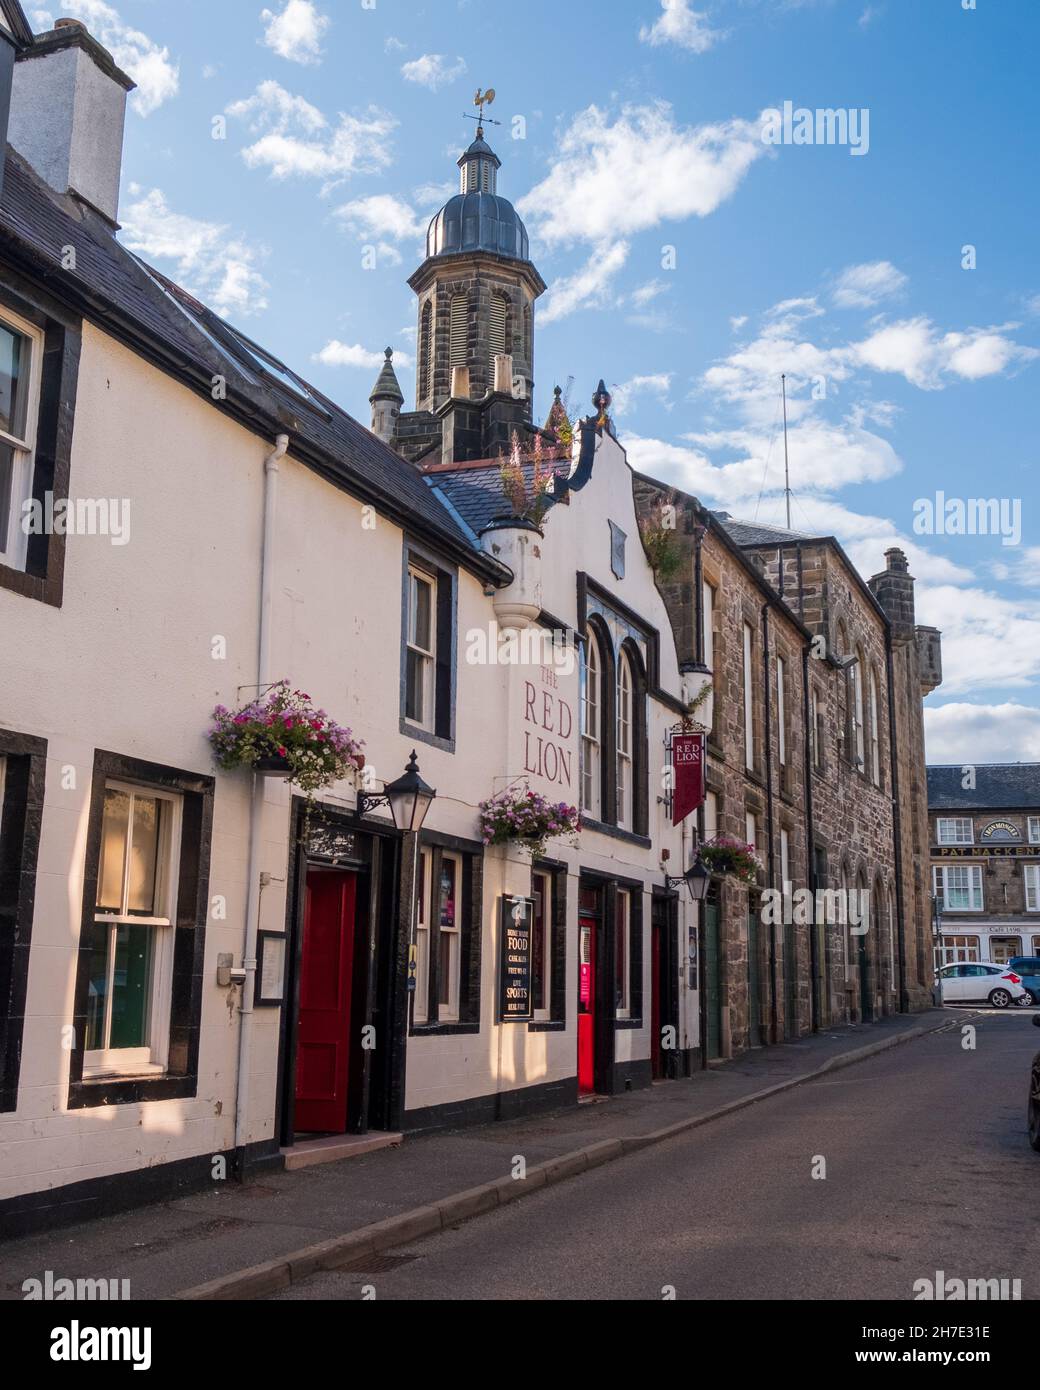 El pub Red Lion en Tolbooth Street en la ciudad de Forres, Moray, Escocia Foto de stock